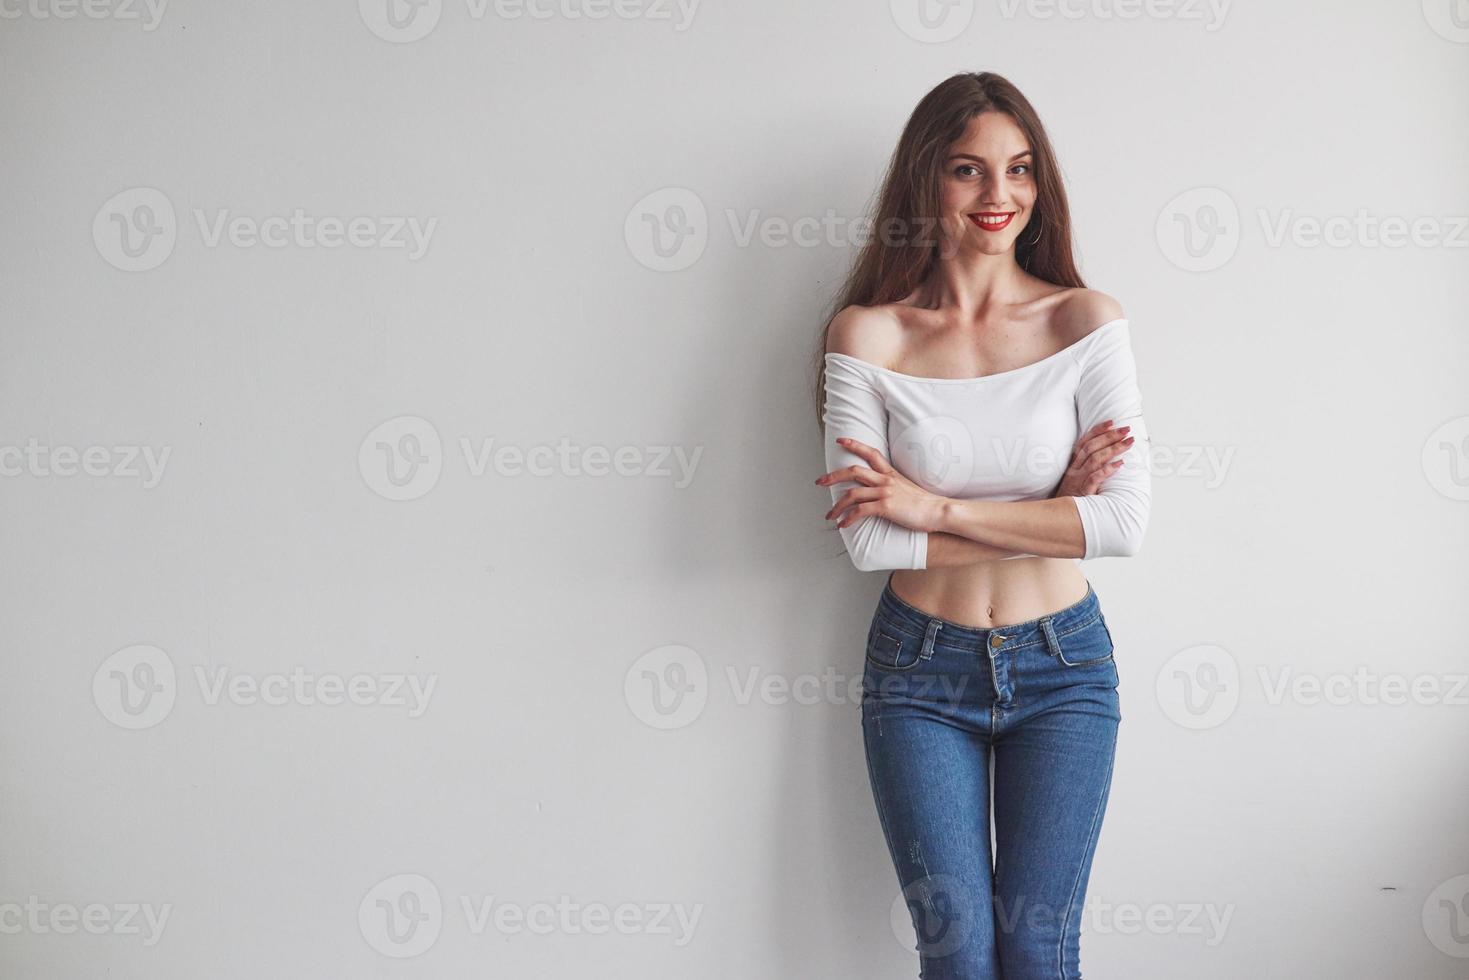 prachtige glimlachende jonge vrouw die met gekruiste handen tegen de muur staat foto